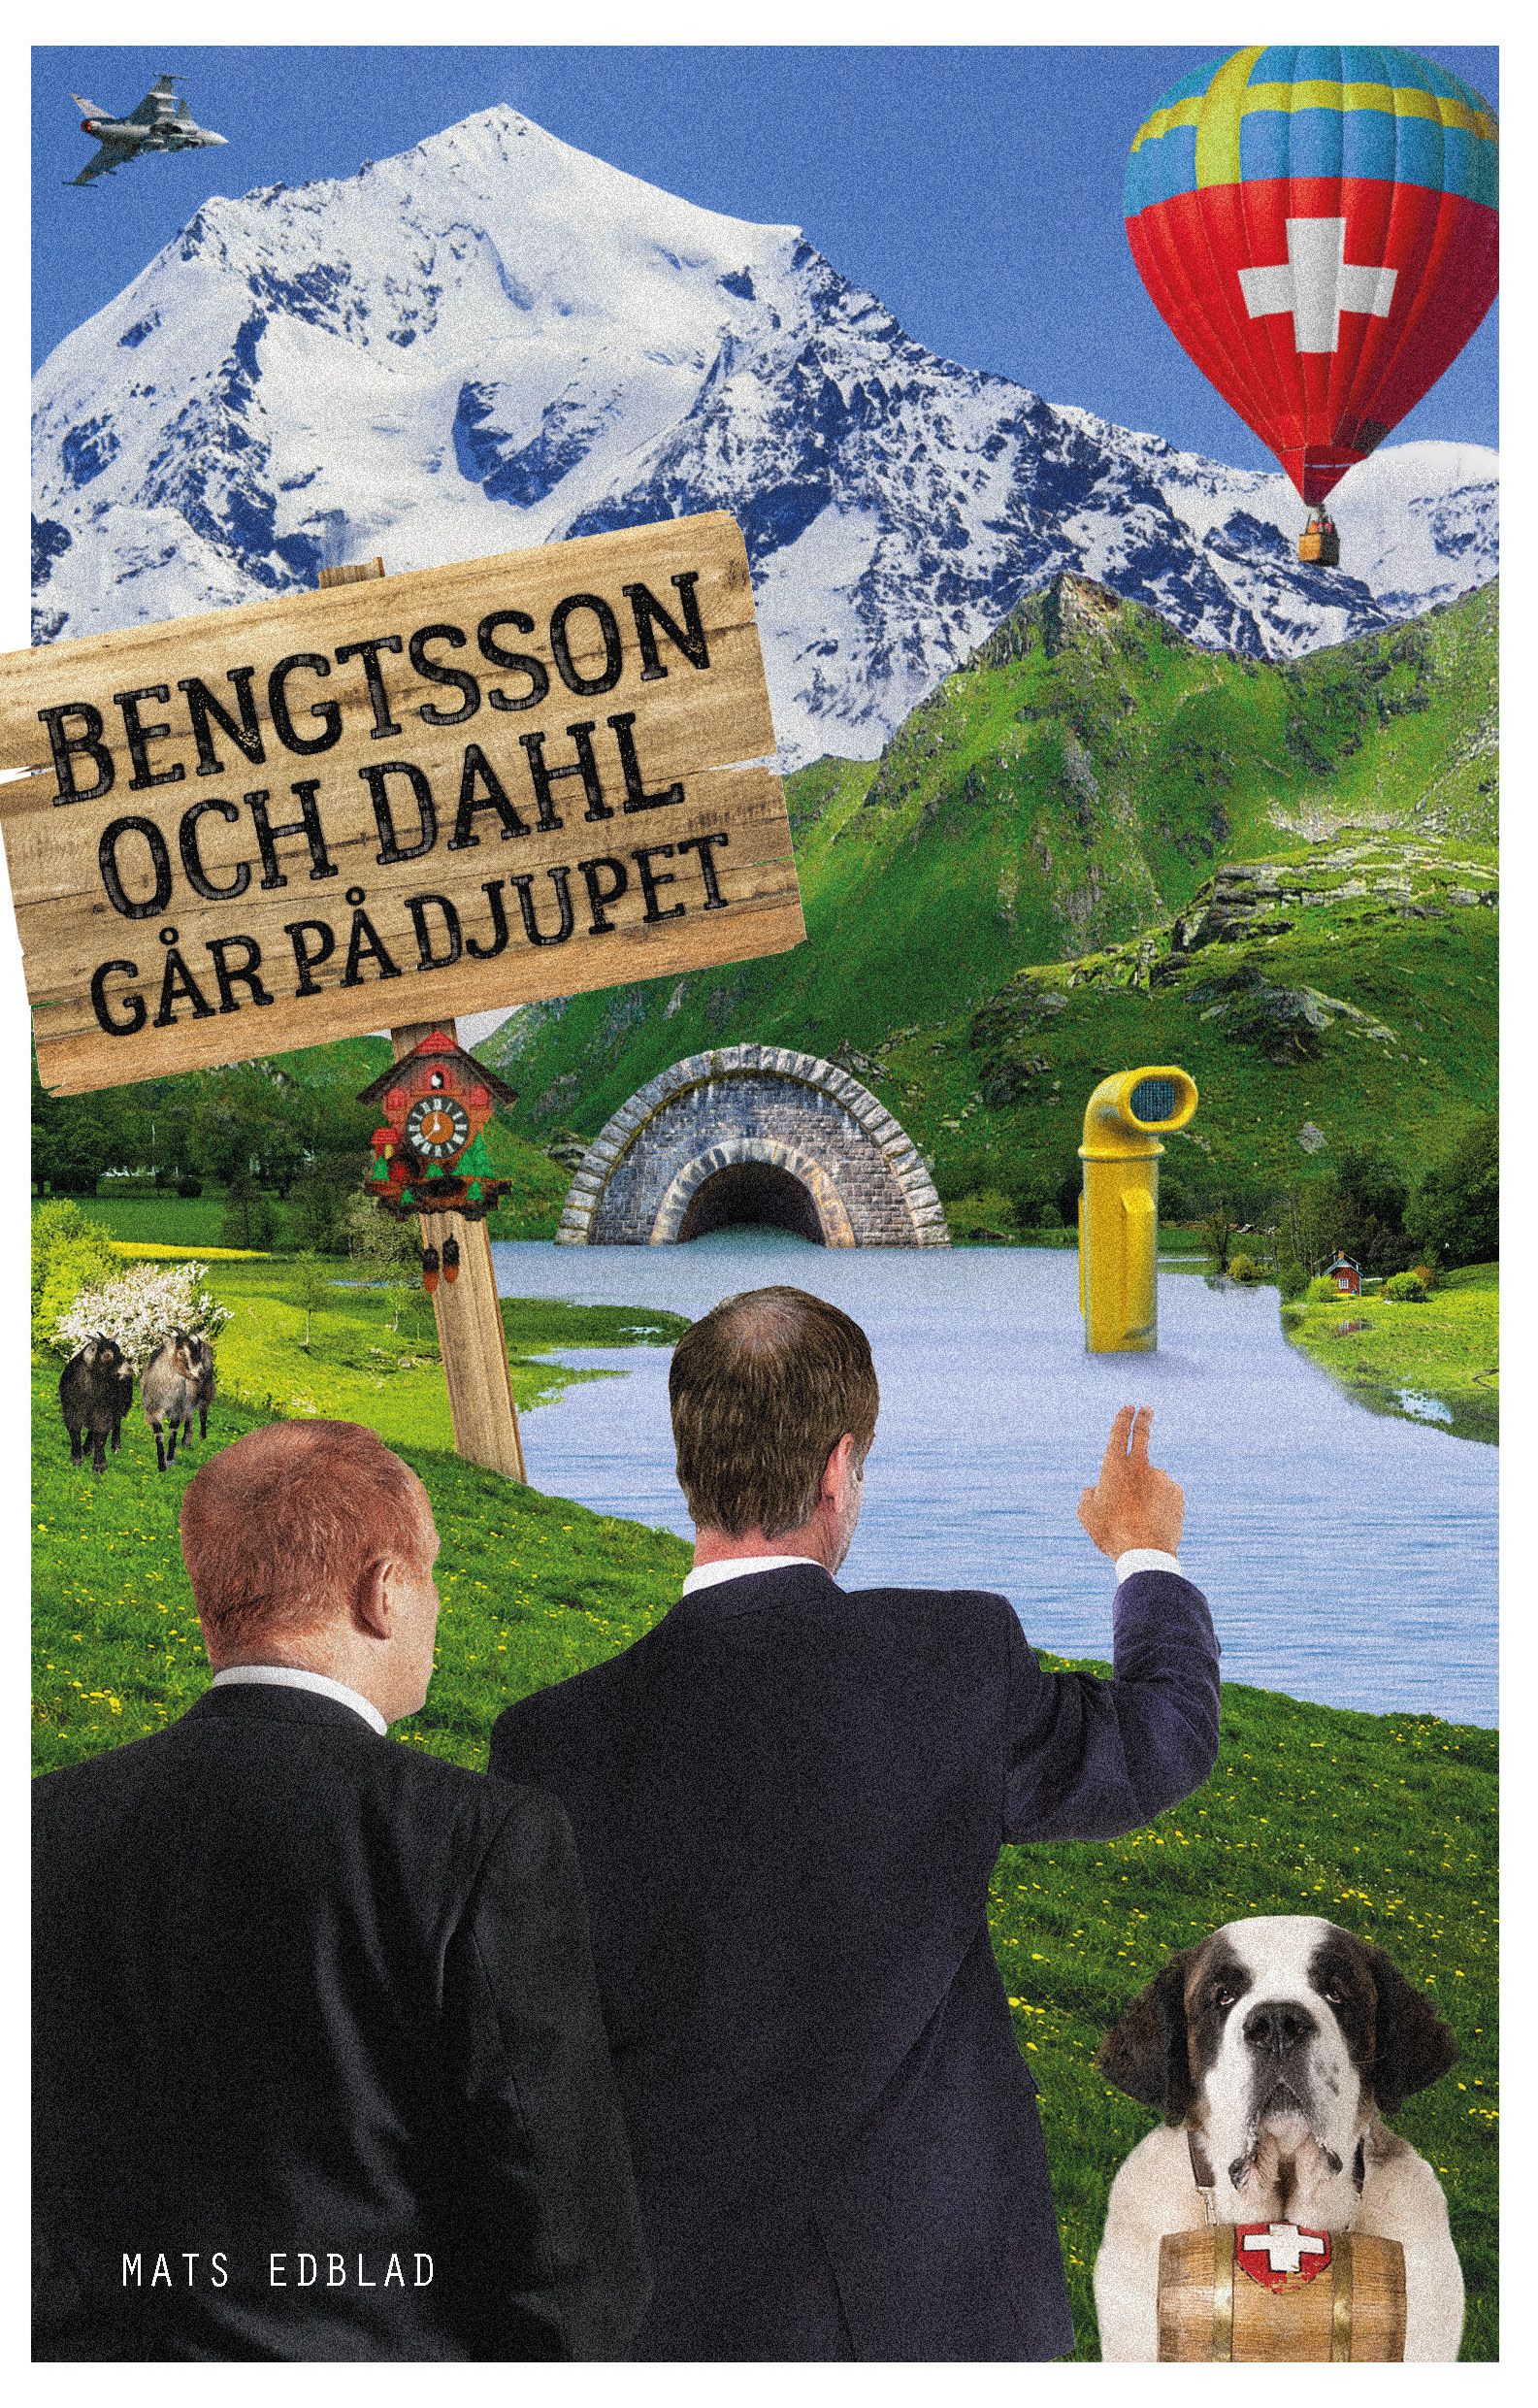 Bengtsson och Dahl går på djupet, eBook by Mats Edblad